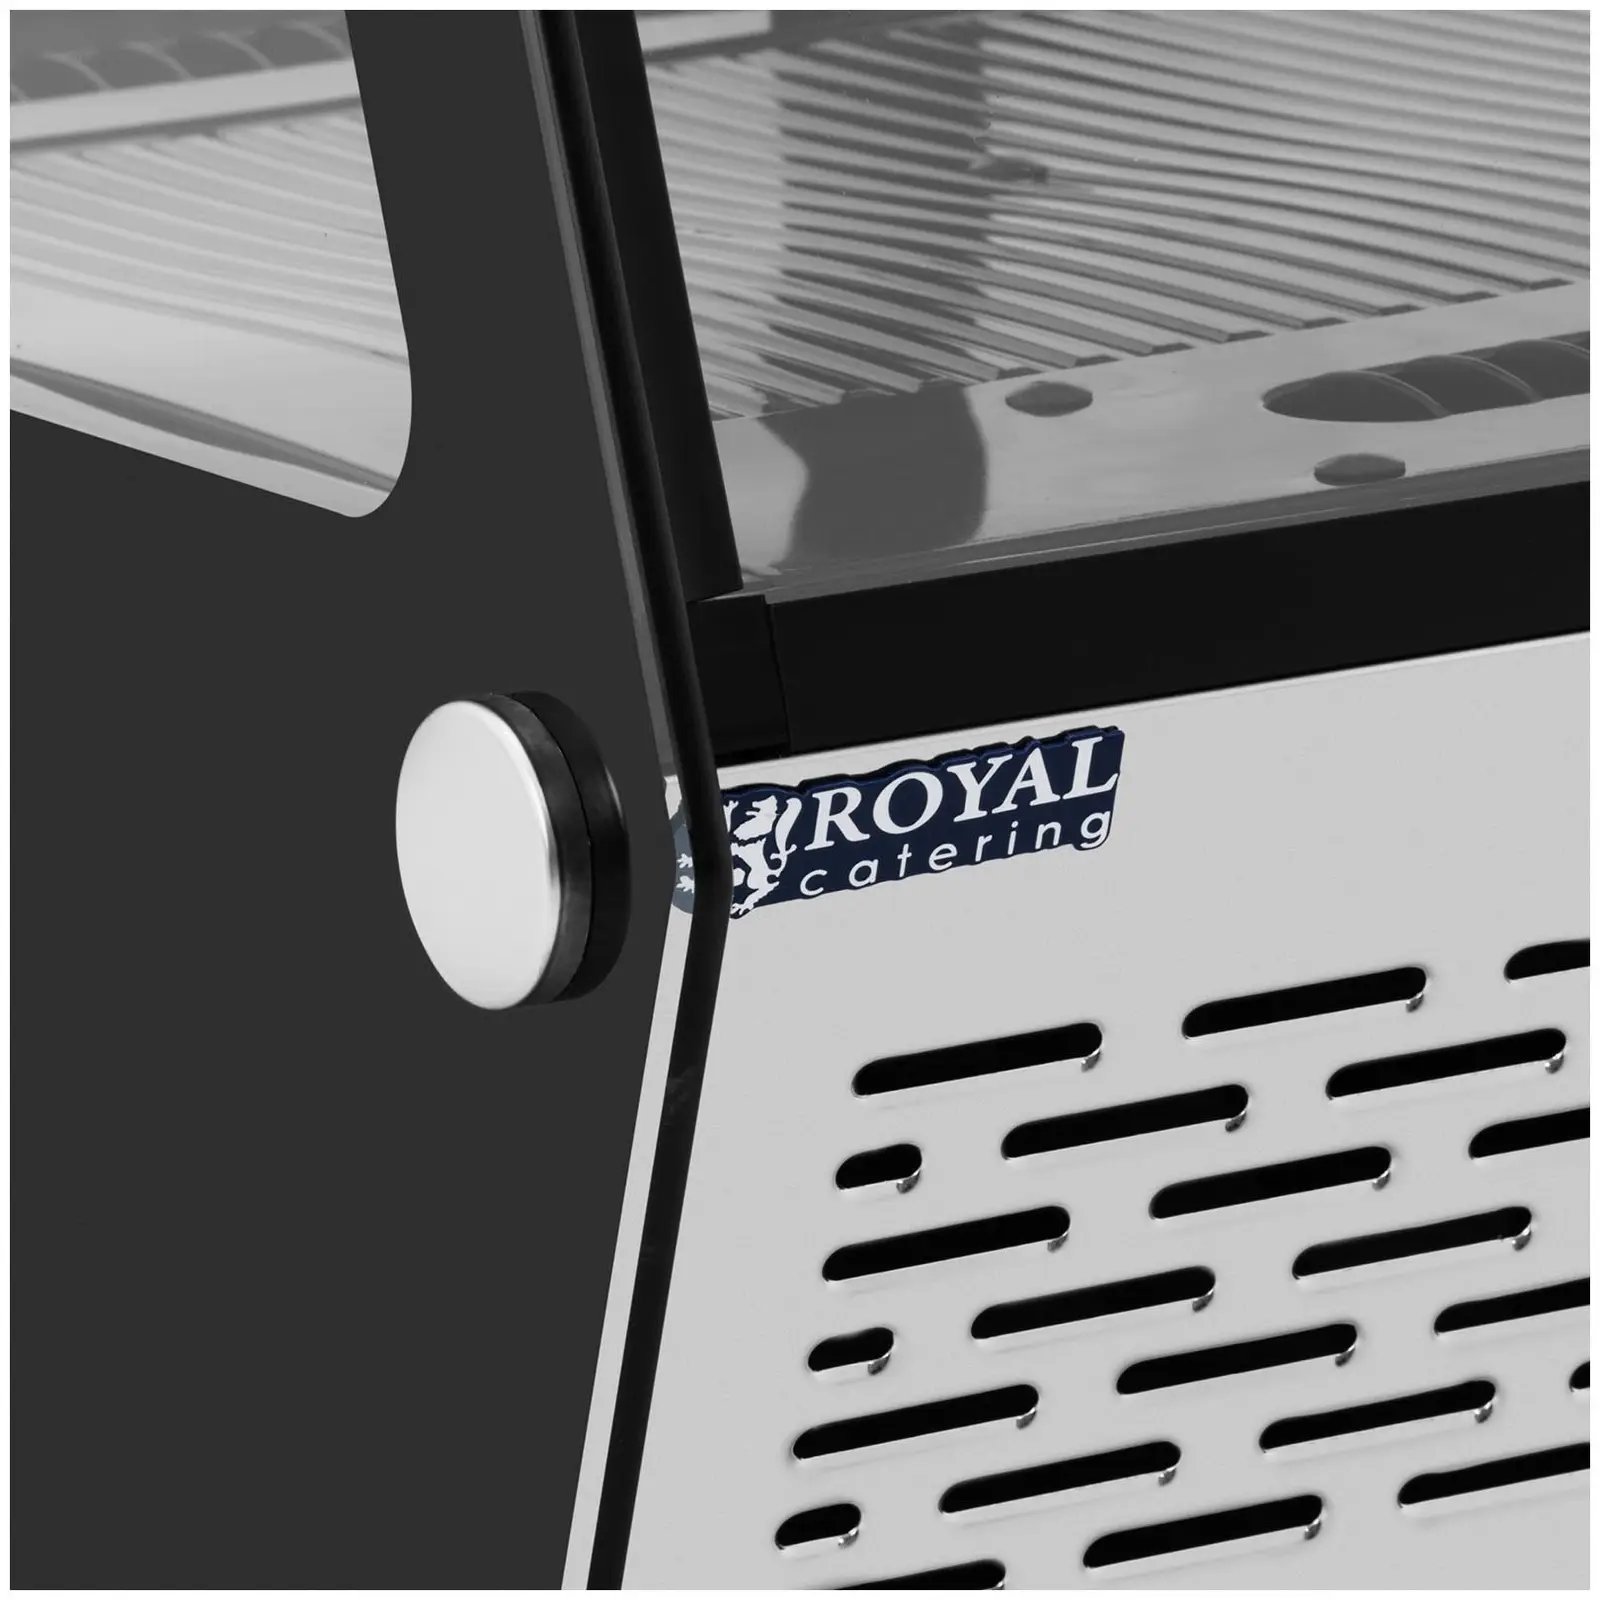 Chladicí vitrína – 120 l – Royal Catering – 3 úrovně – černá barva